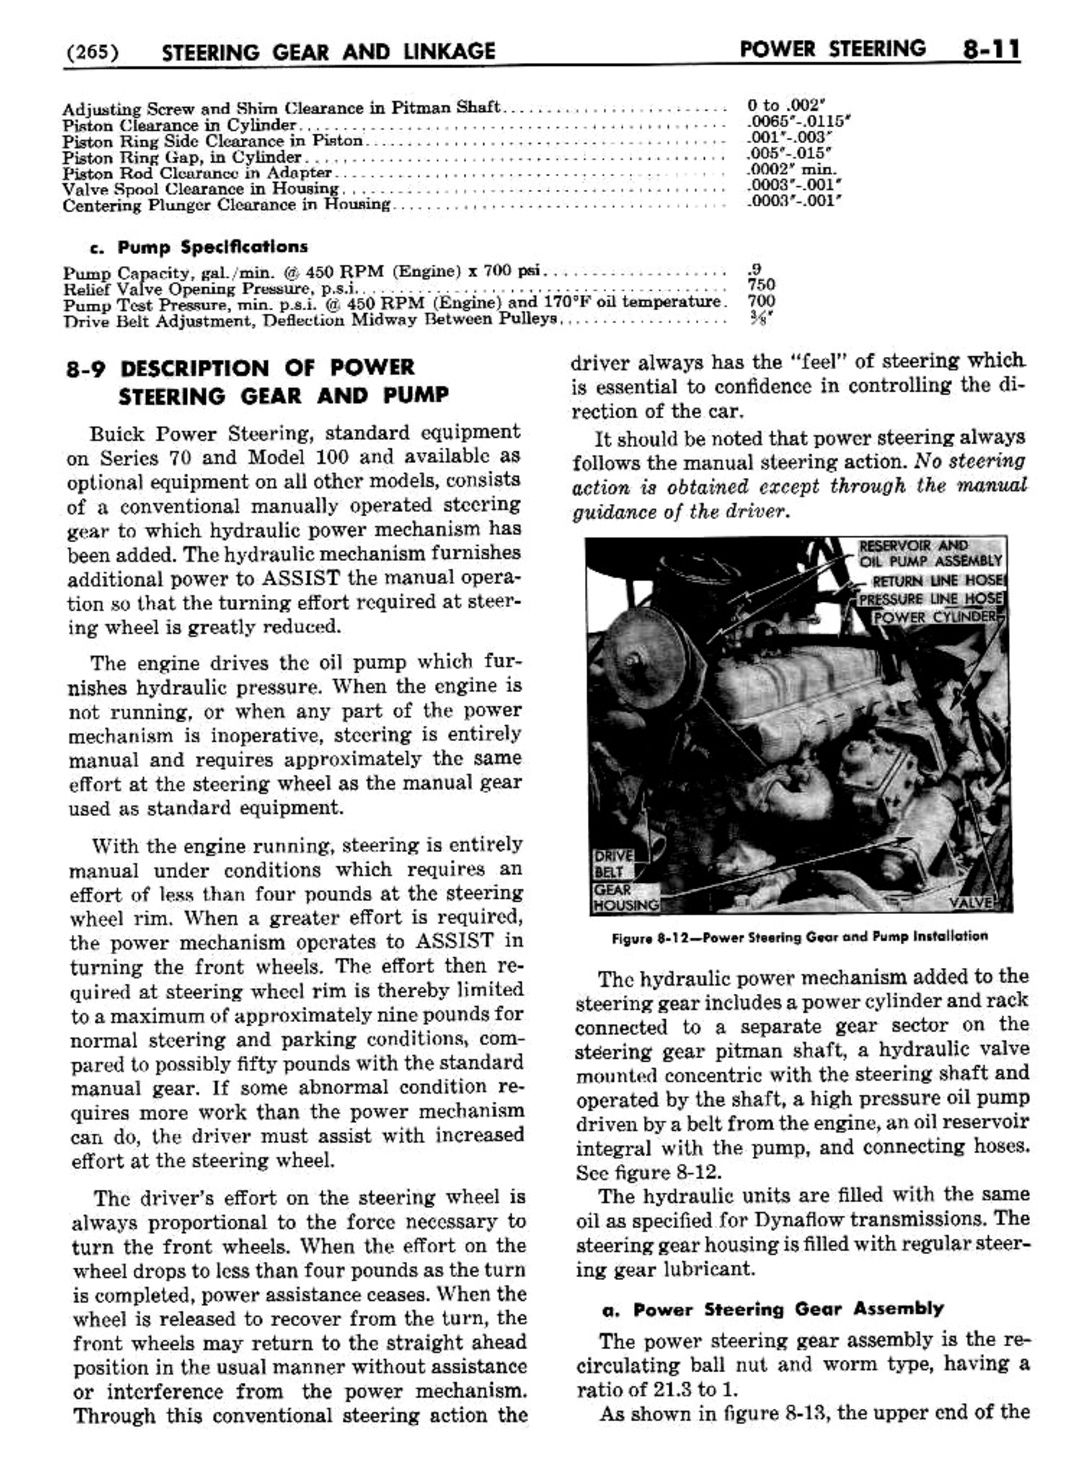 n_09 1954 Buick Shop Manual - Steering-011-011.jpg